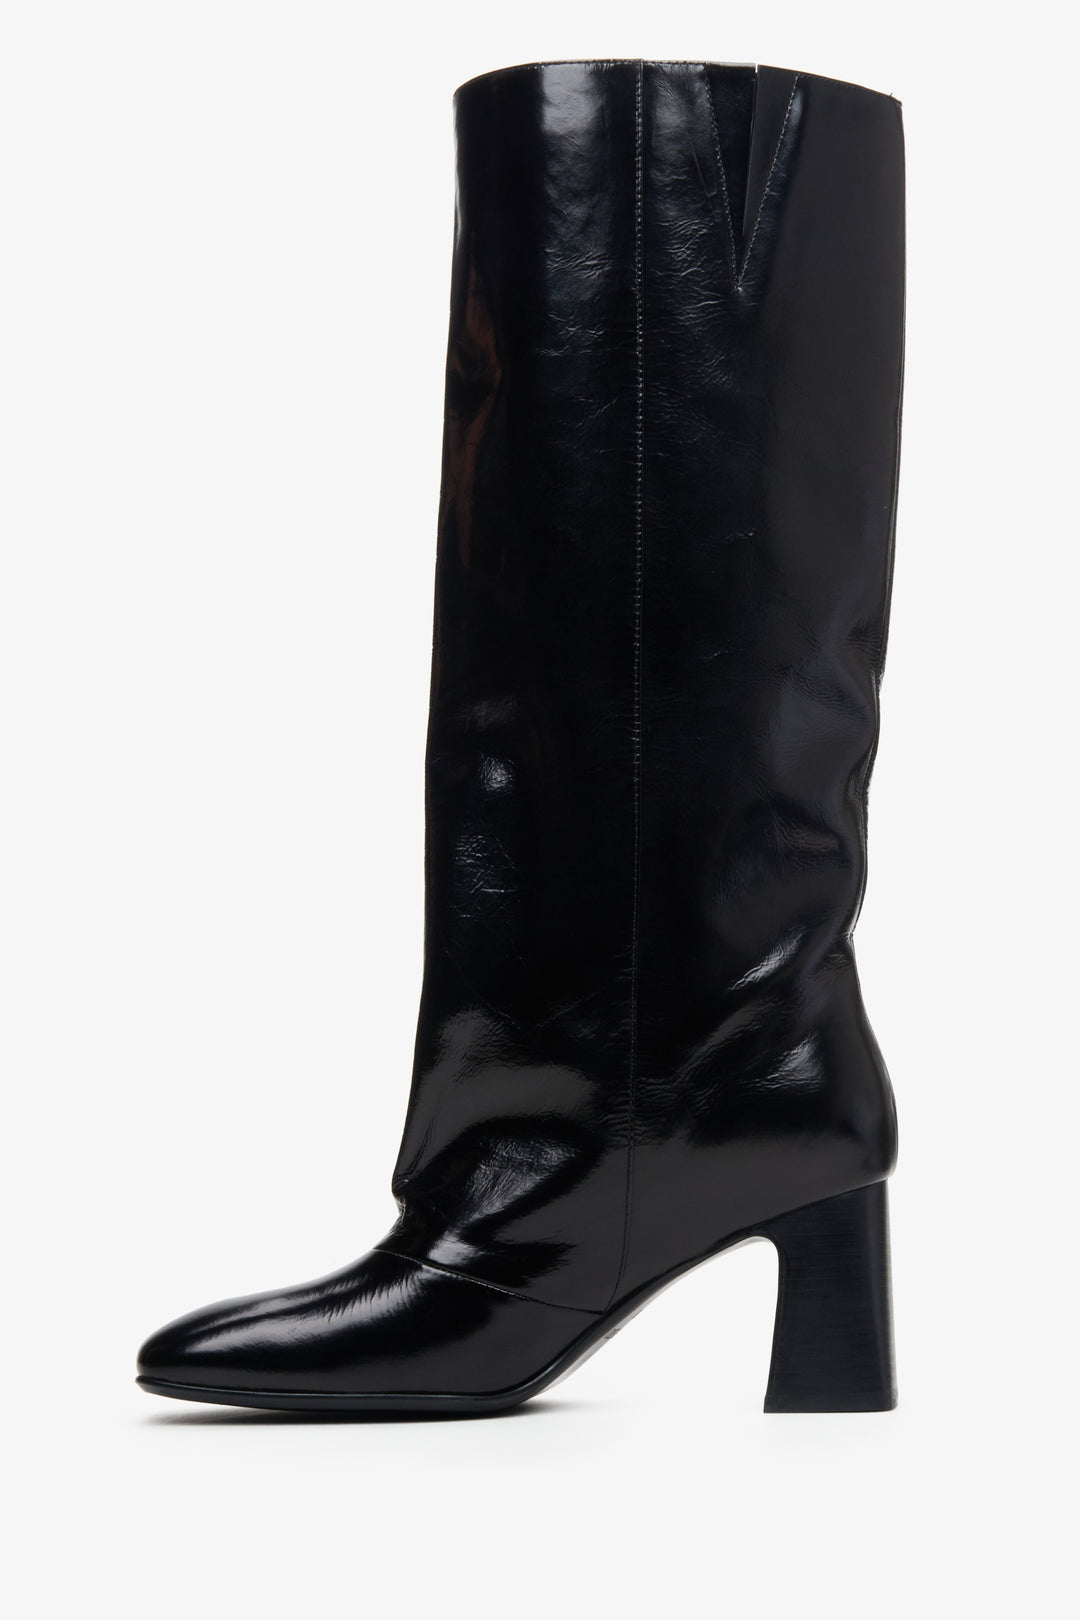 Kozaki skórzane damskie z szeroką cholewą w kolorze czarnym Estro - profil buta.